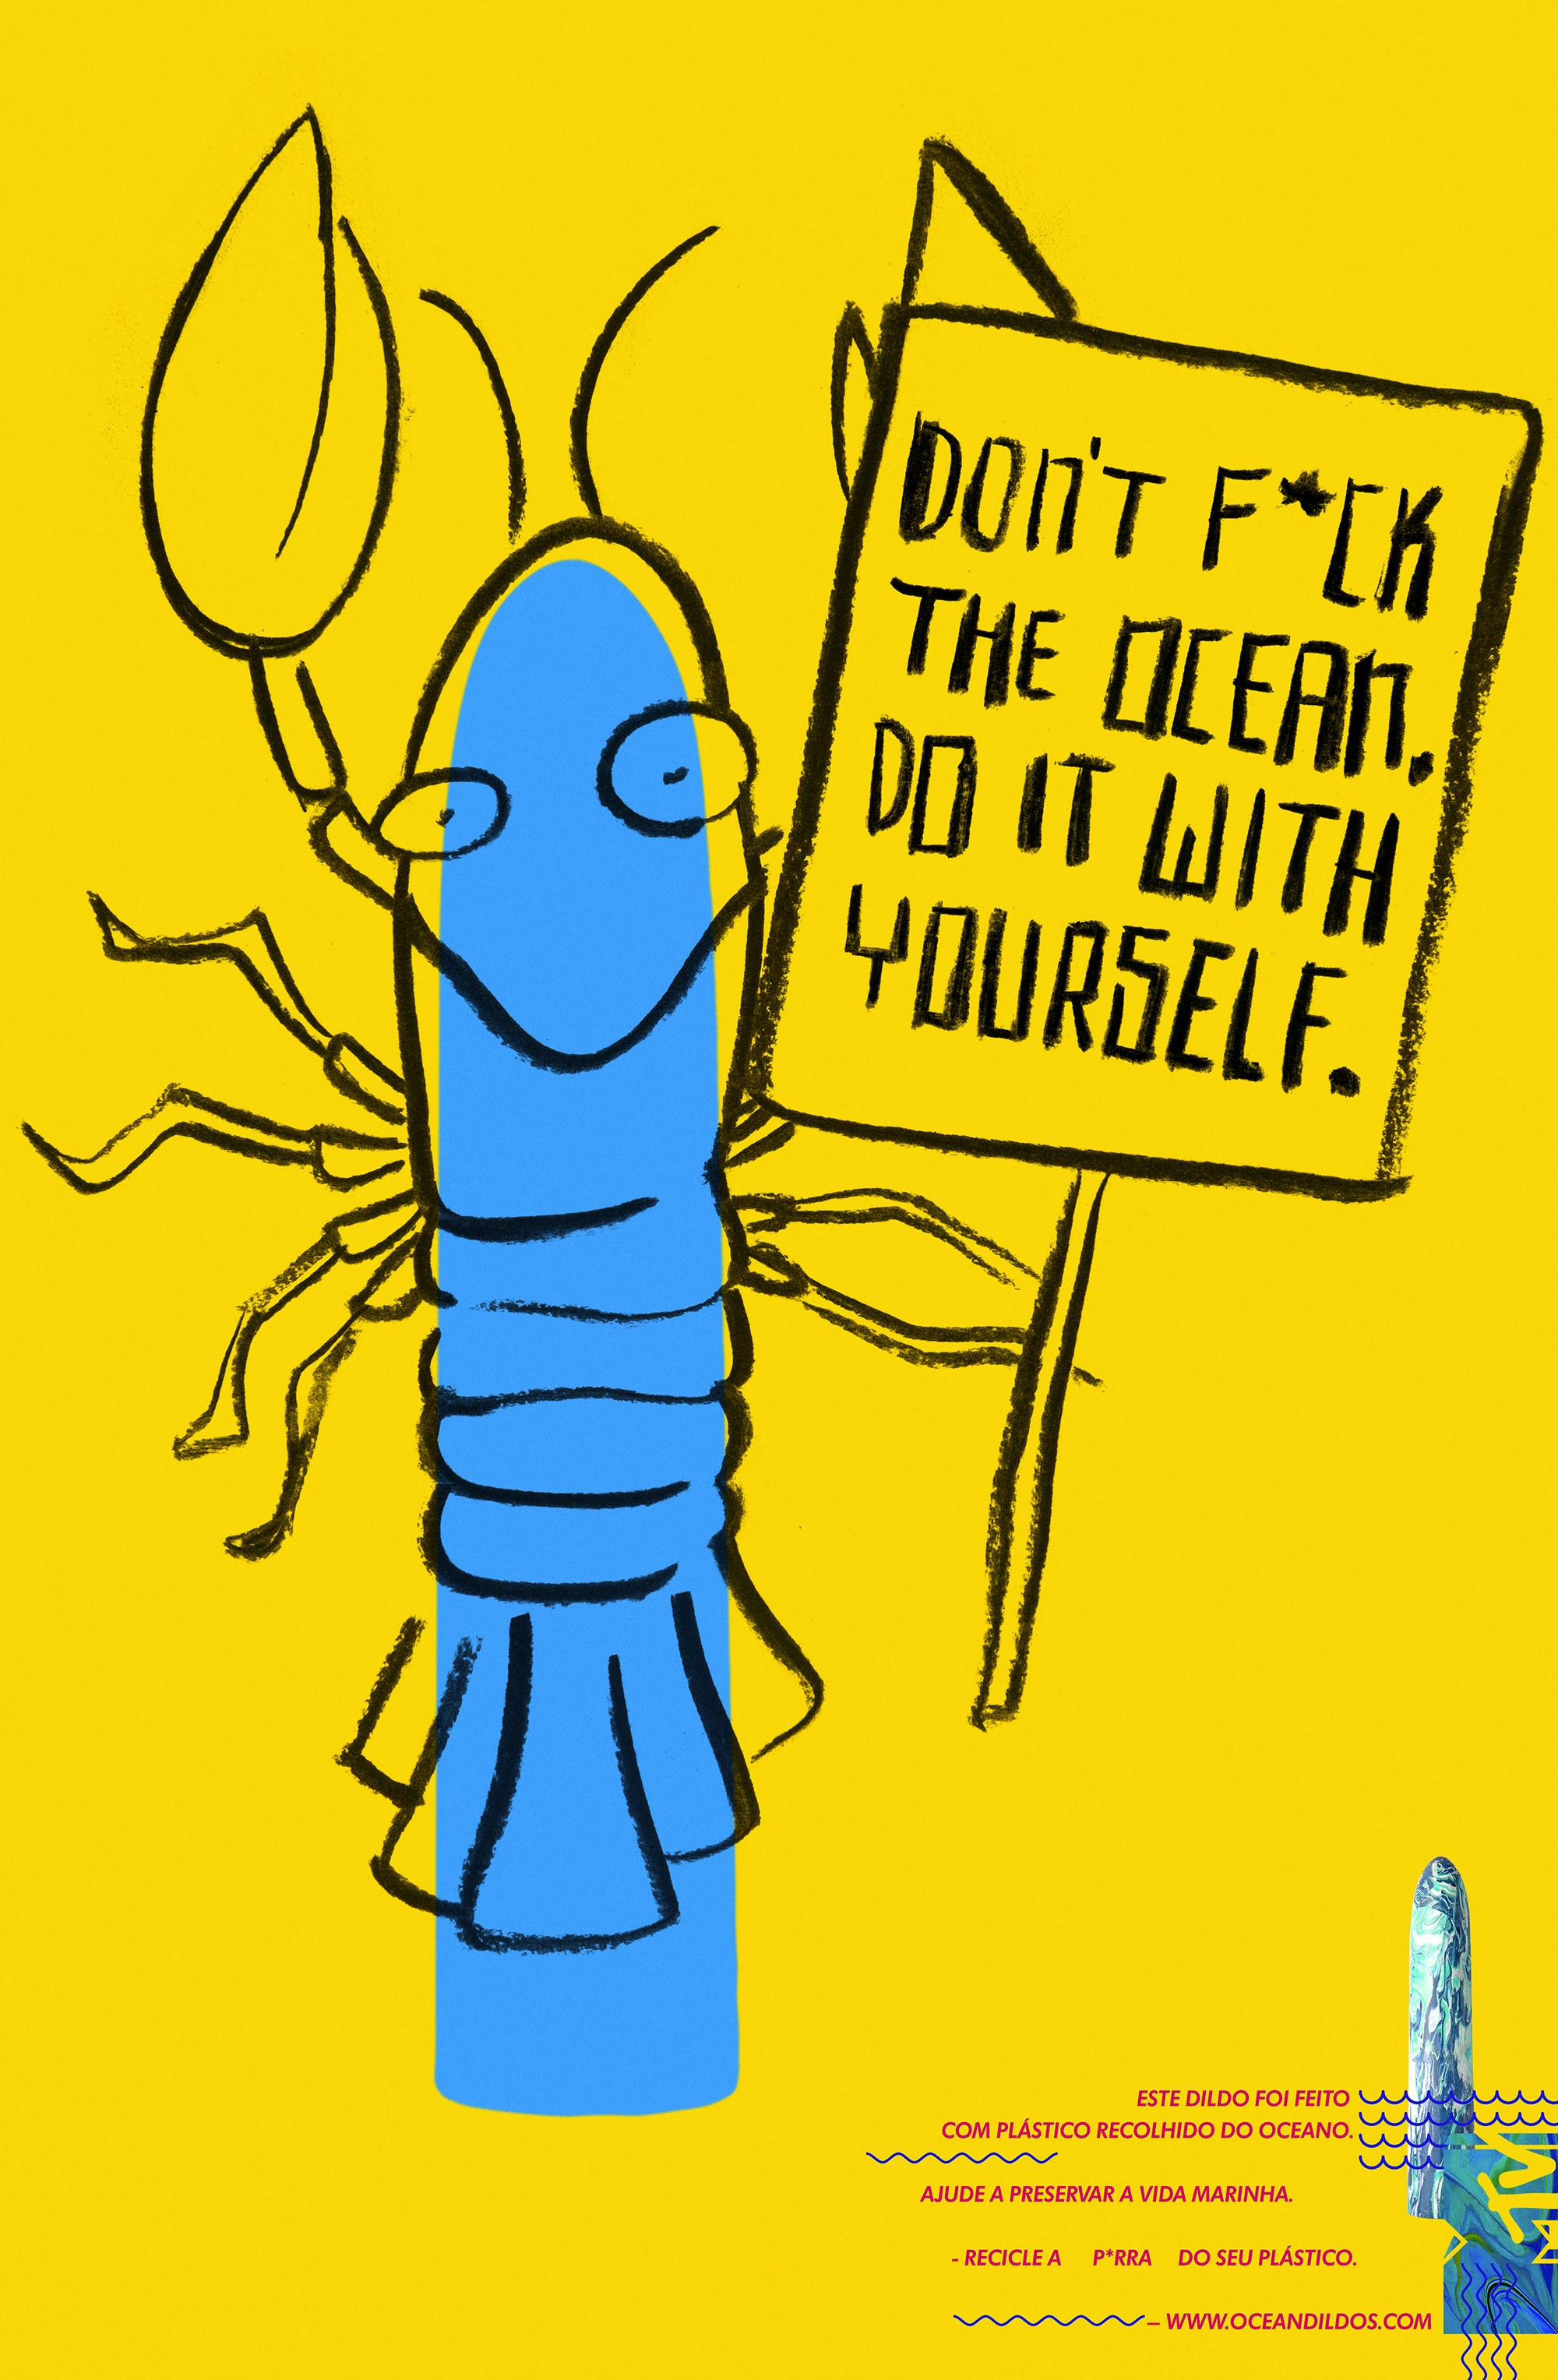 Ilustração lagosta azul com cartaz escrito "Don't fuck the ocean. Do it with your self"